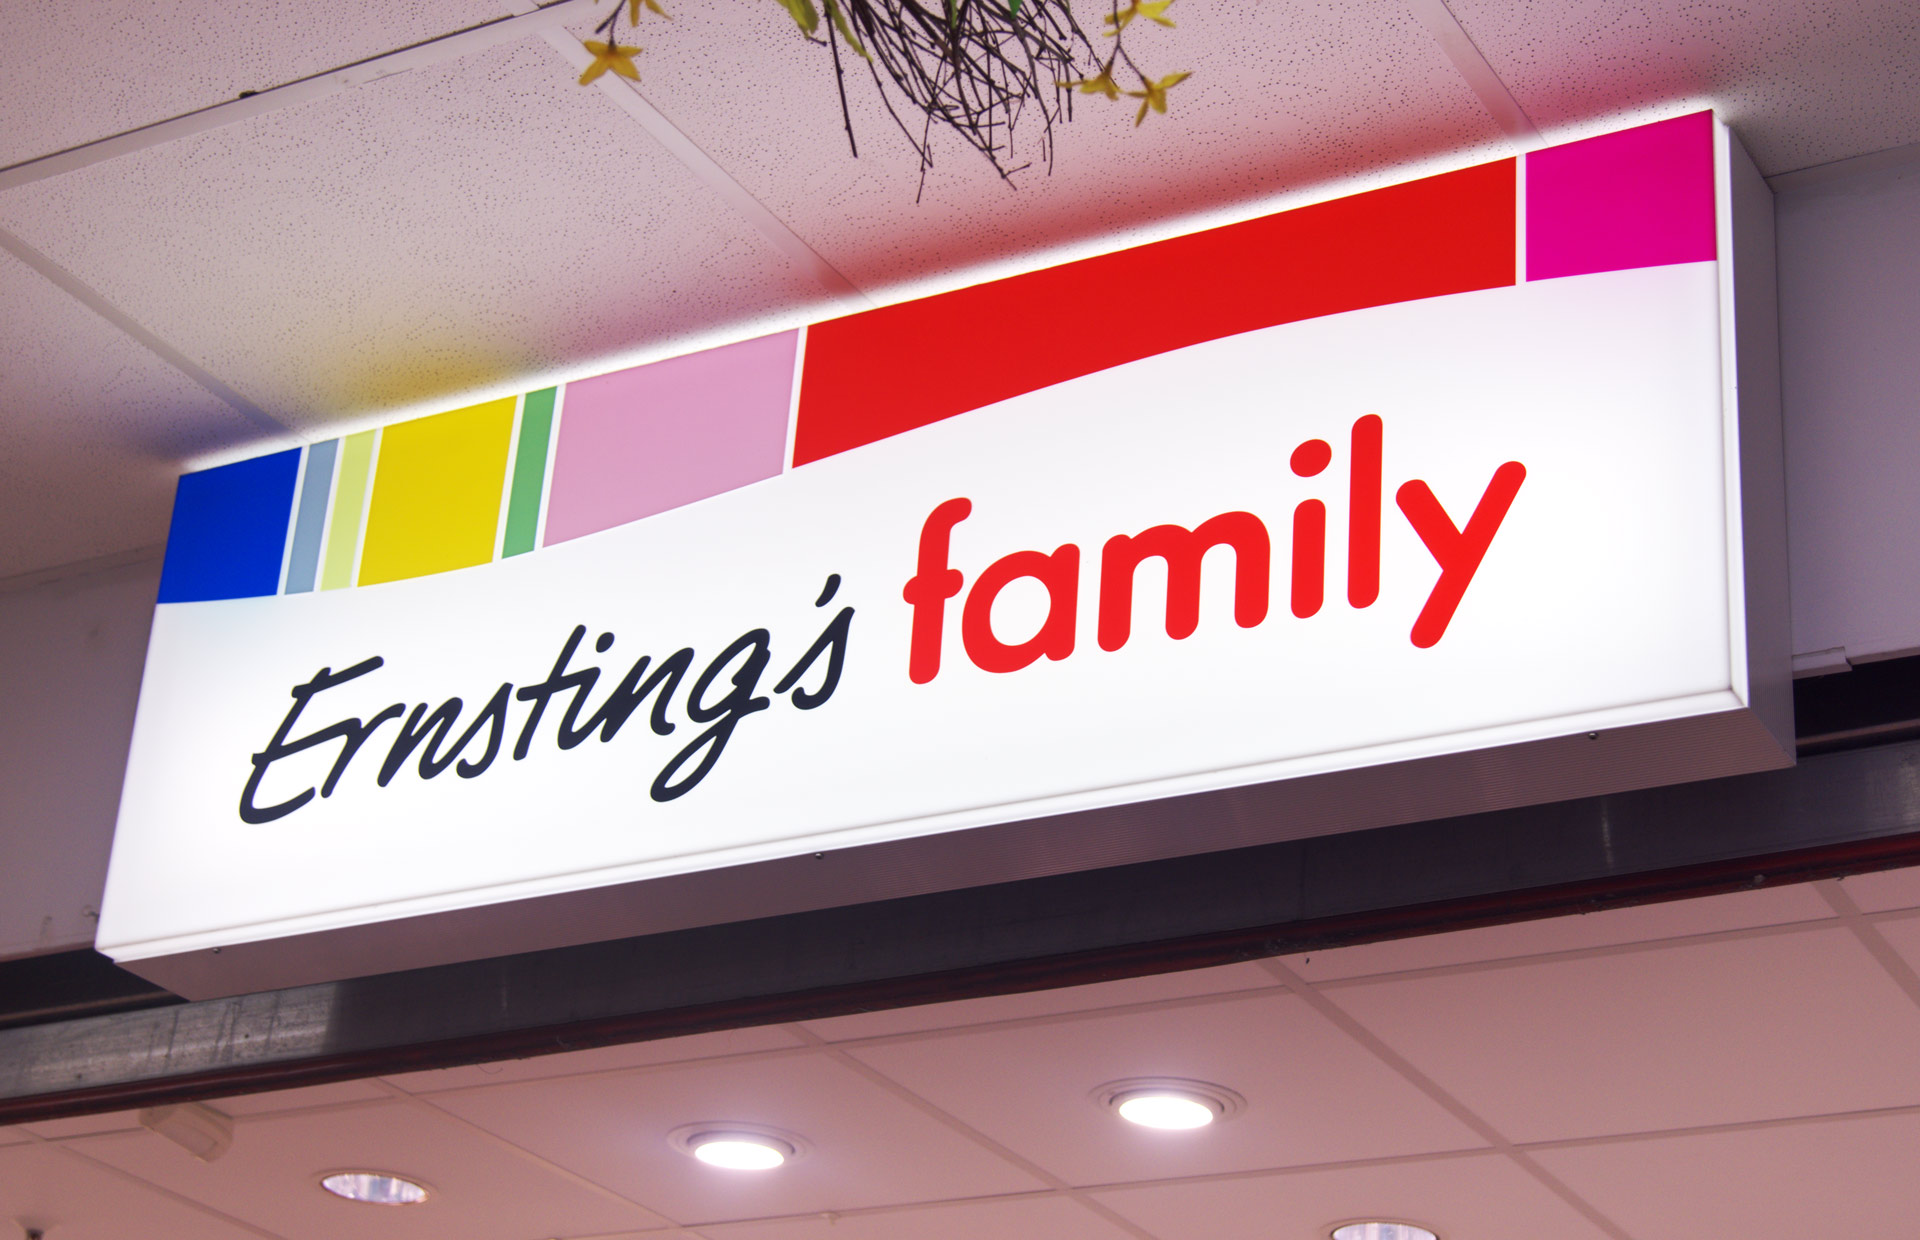 Altmark Forum Stendal - Ernstings Family